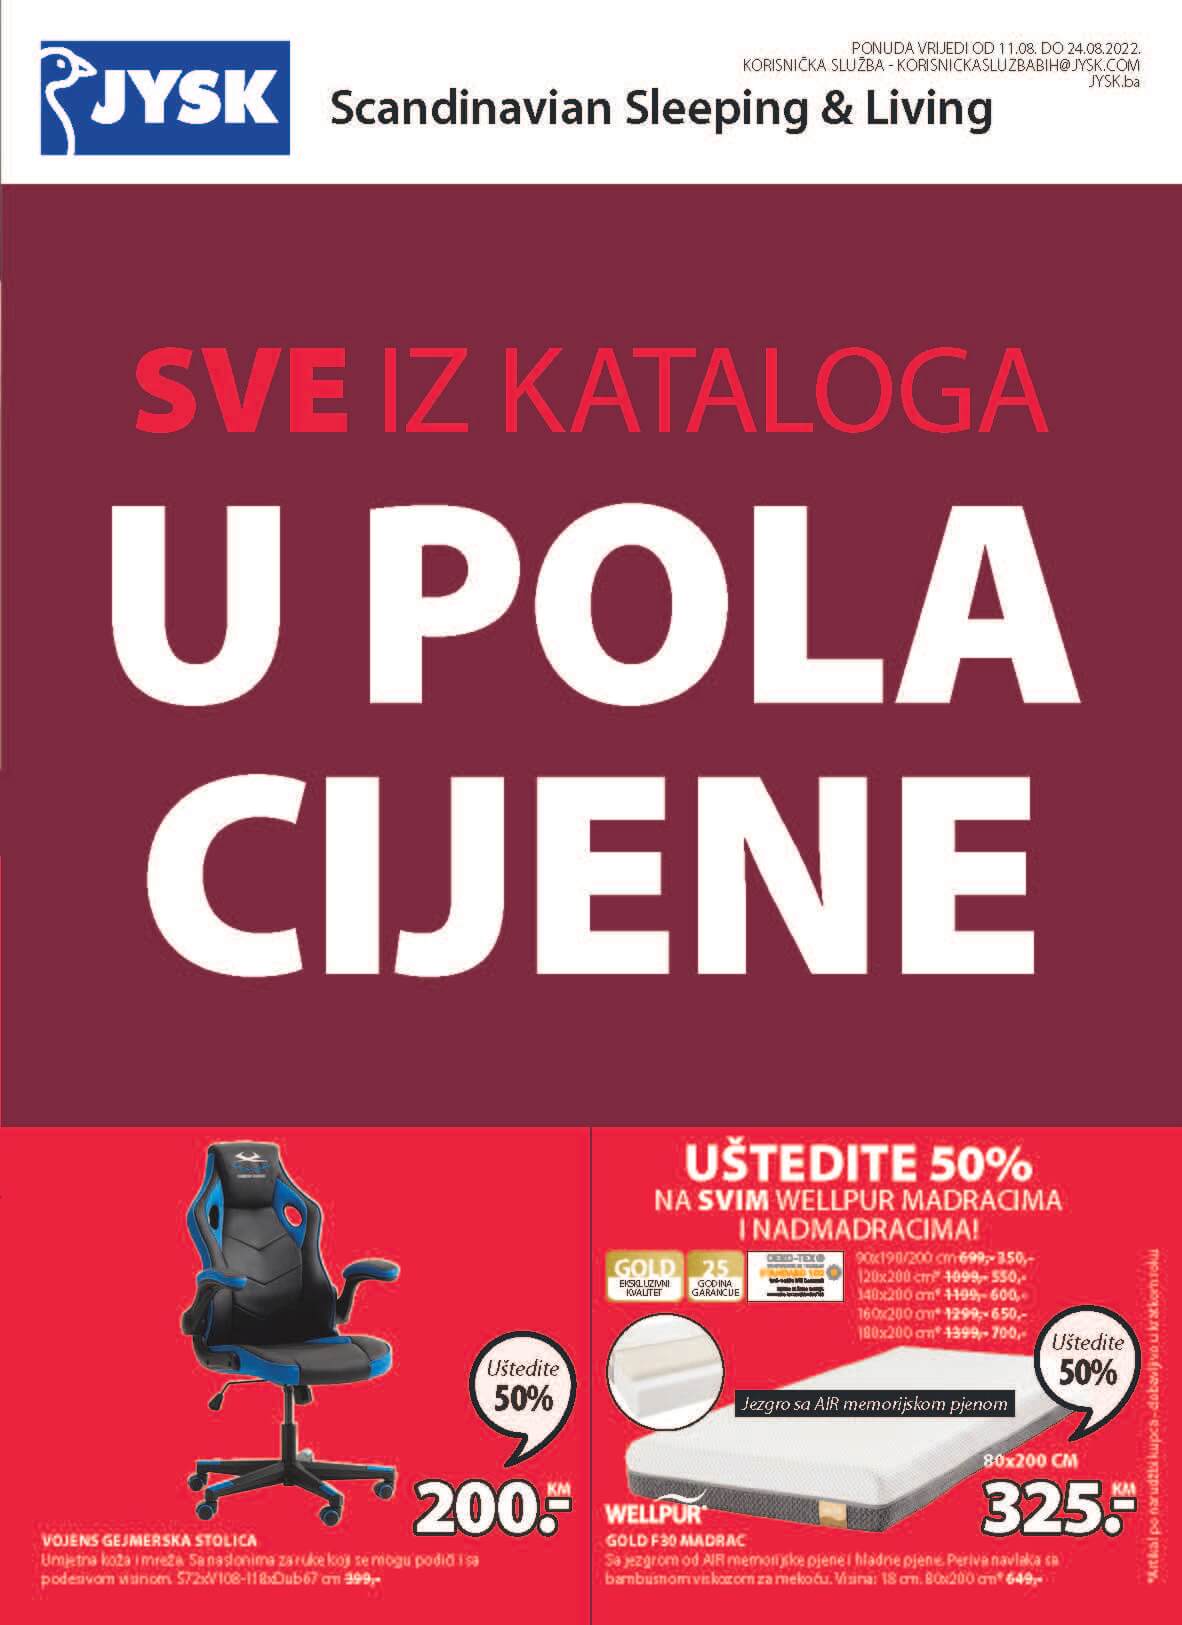 JYSK Katalog BiH AVGUST 2022 SVE u POLA cijene do 24.8.2022. Page 02